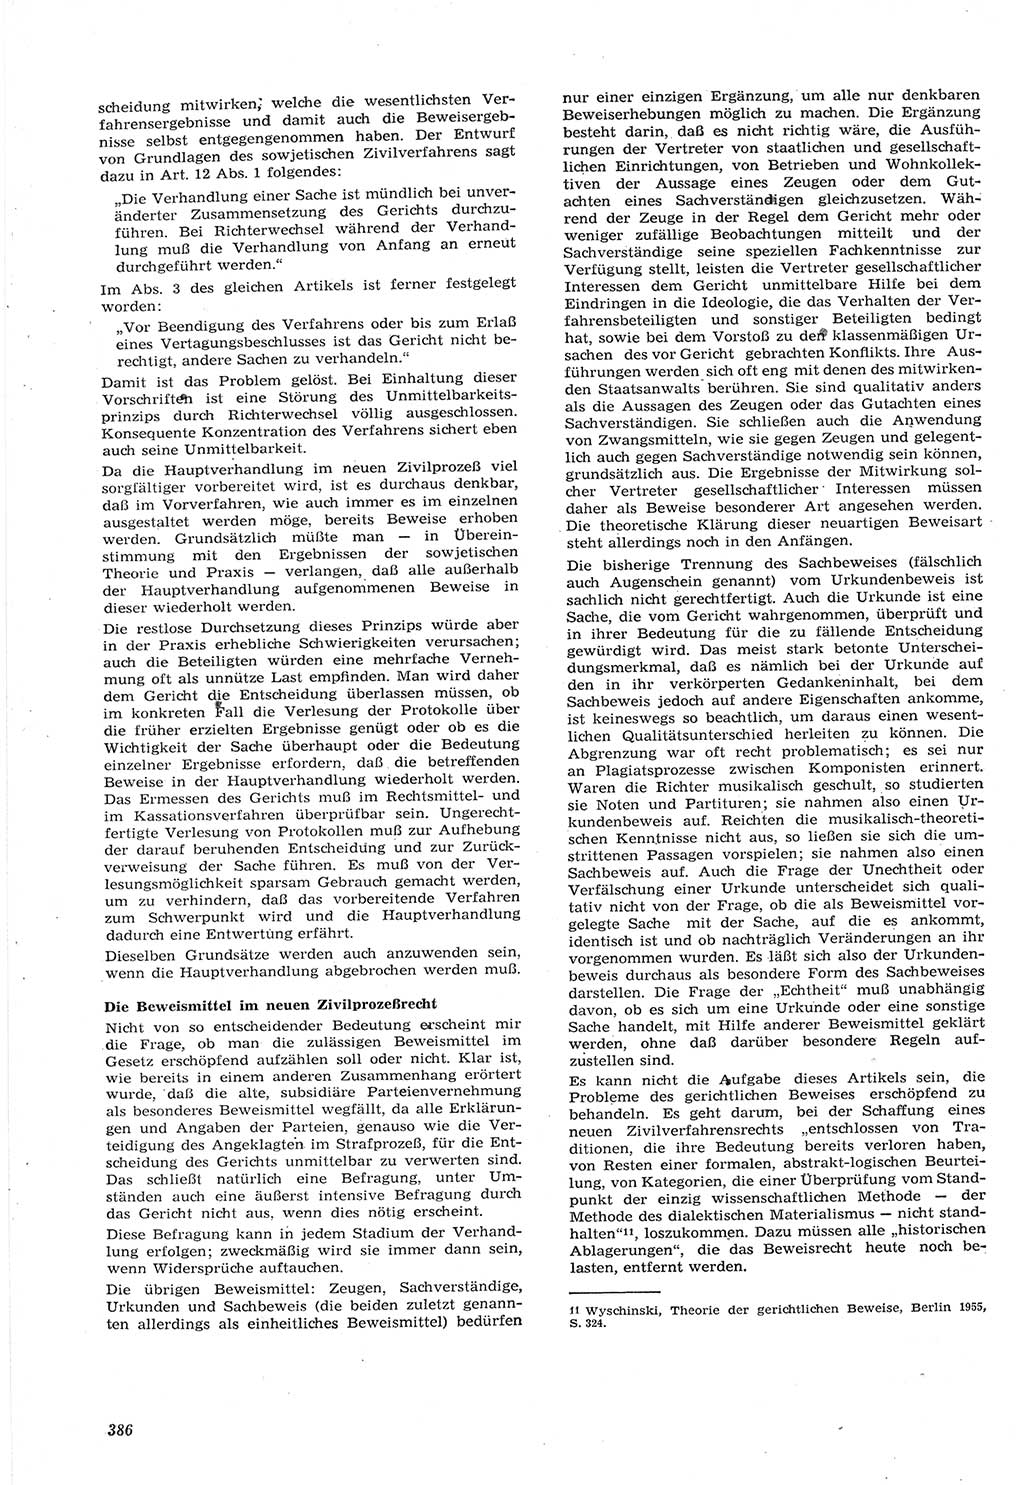 Neue Justiz (NJ), Zeitschrift für Recht und Rechtswissenschaft [Deutsche Demokratische Republik (DDR)], 15. Jahrgang 1961, Seite 386 (NJ DDR 1961, S. 386)